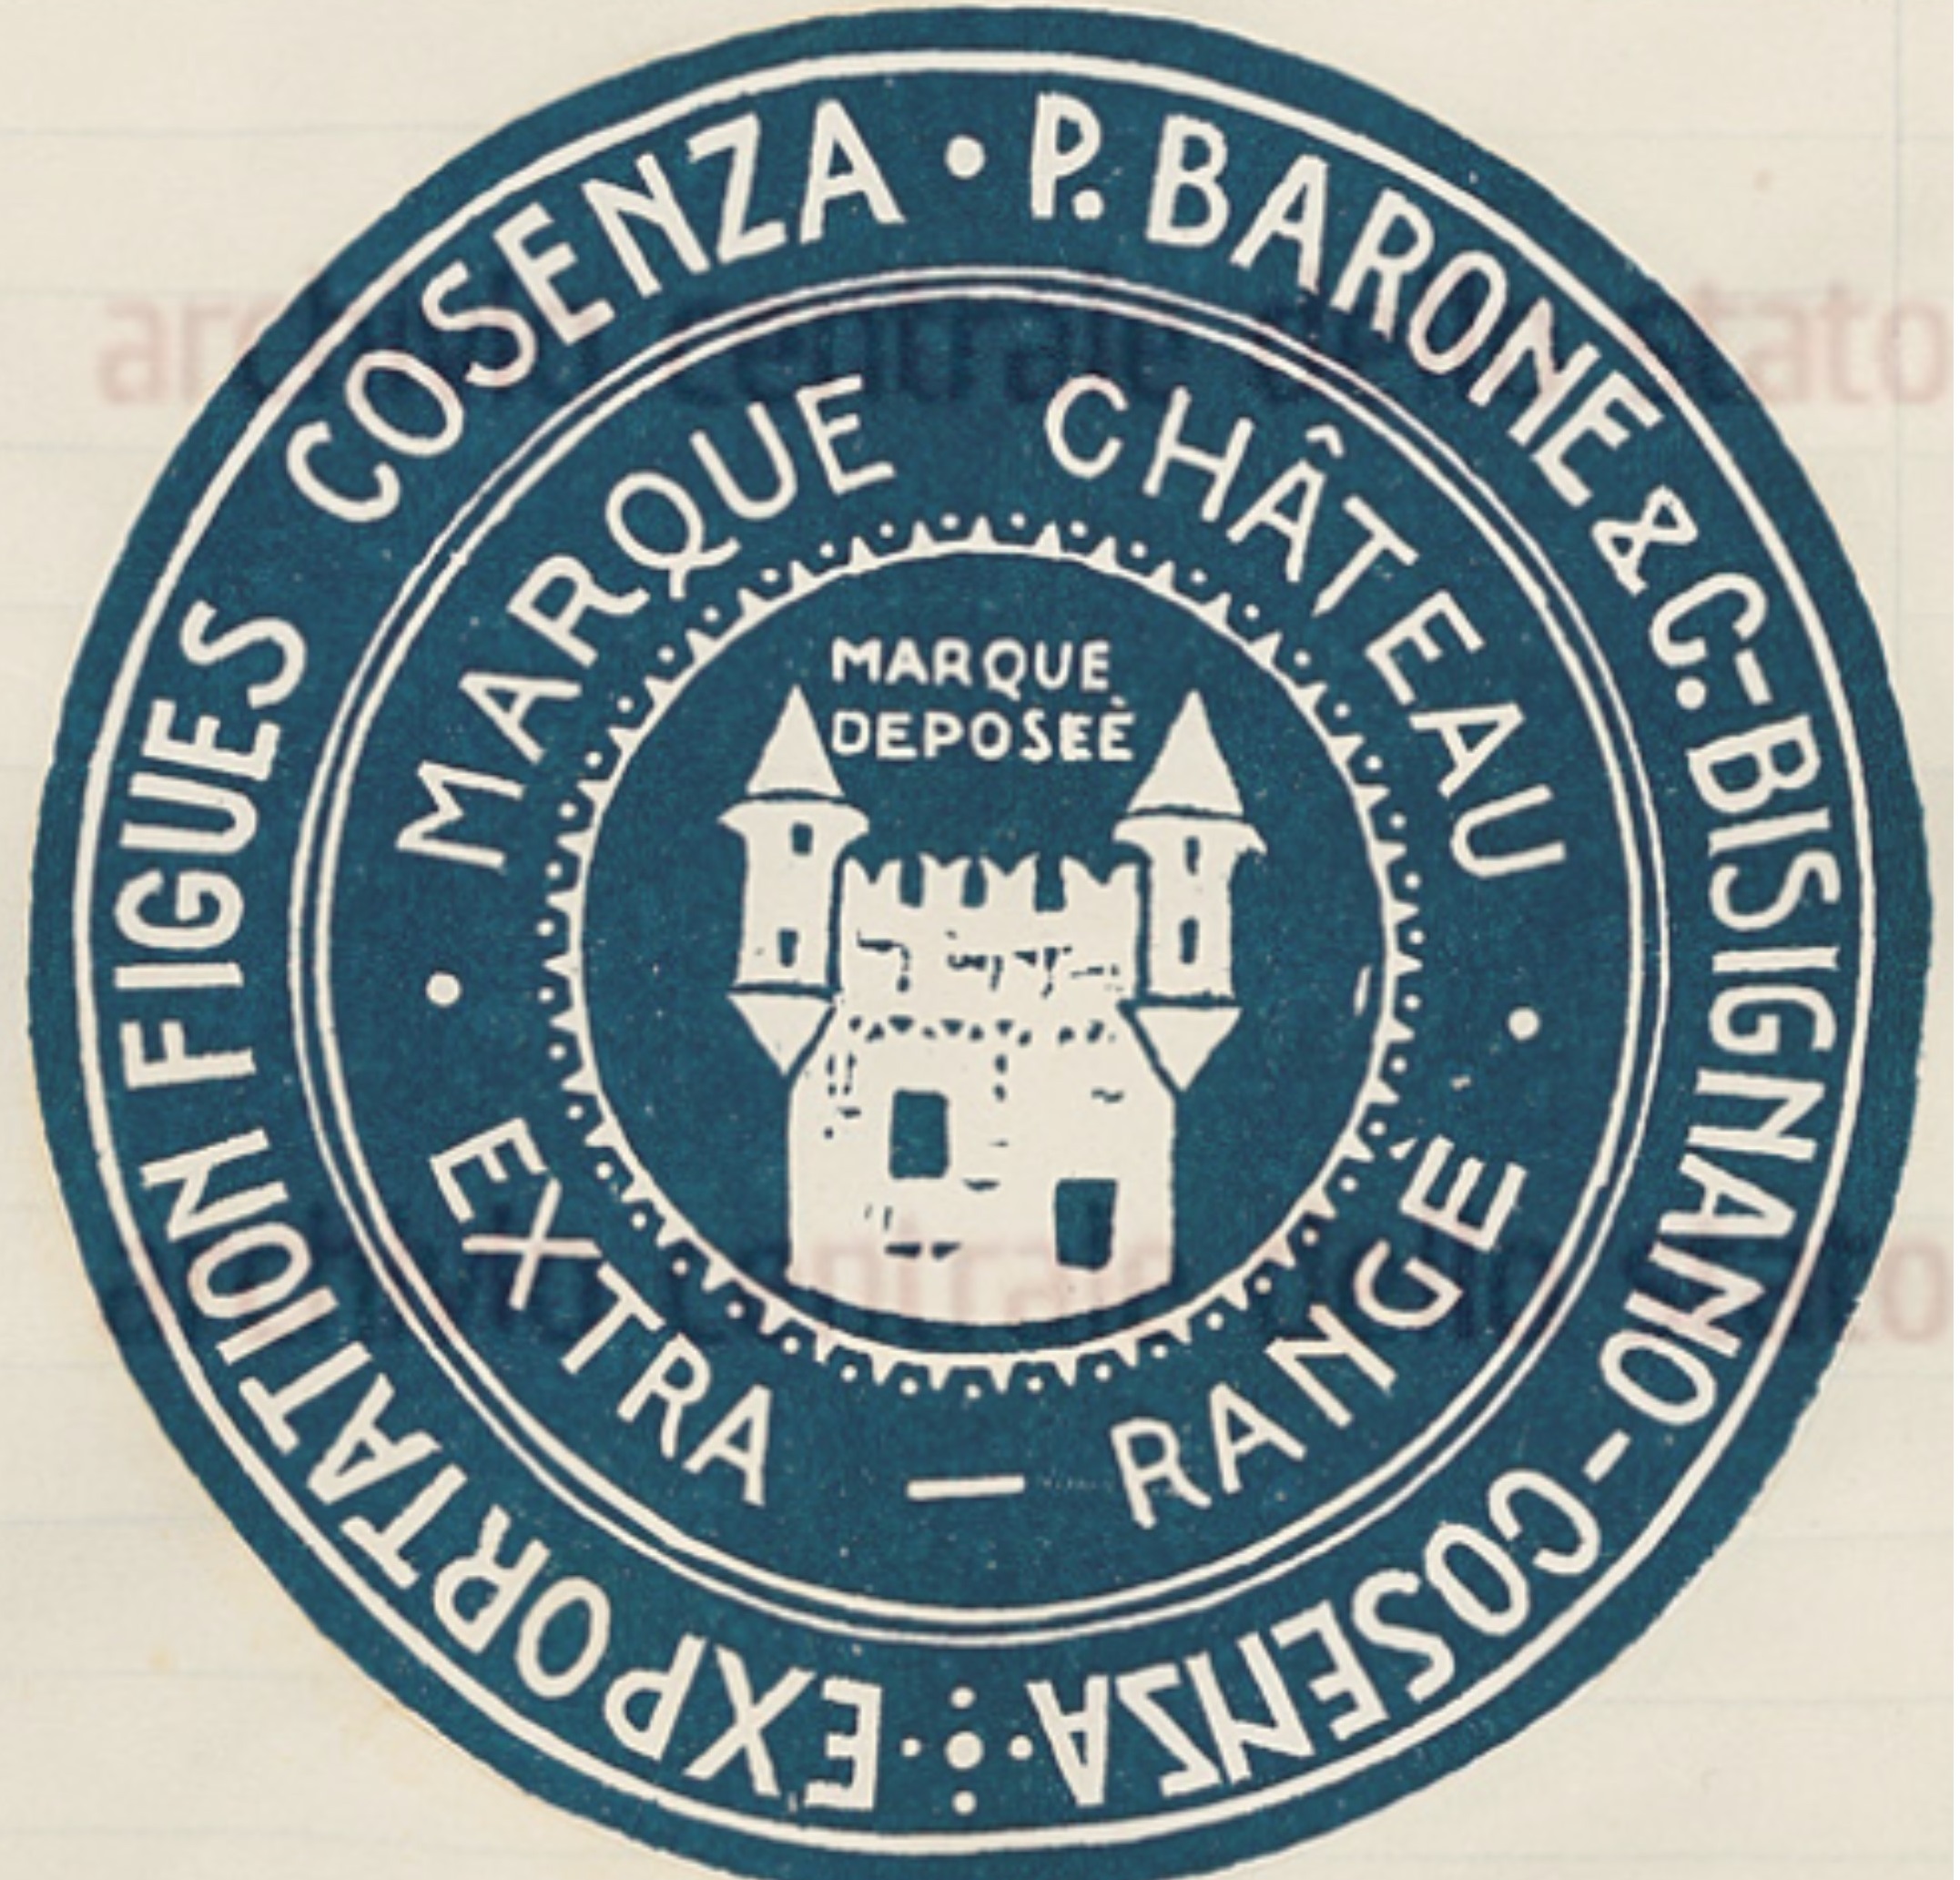 Barone Bisignano, Marque Chateau, 1933